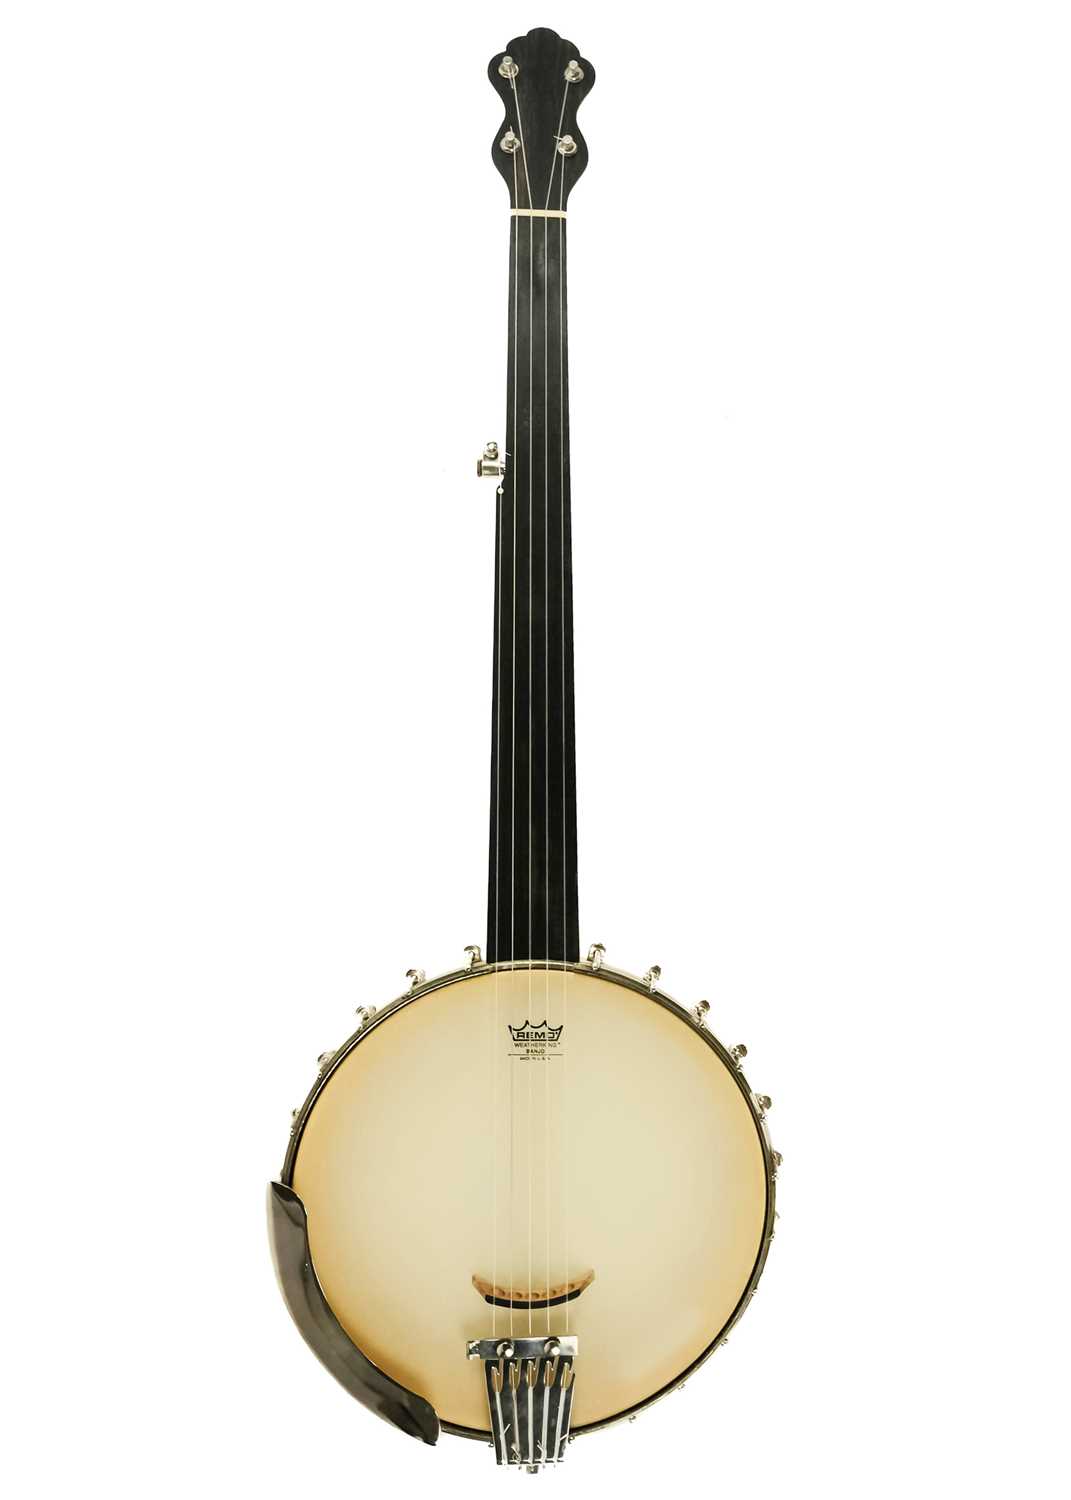 A fretless banjo.